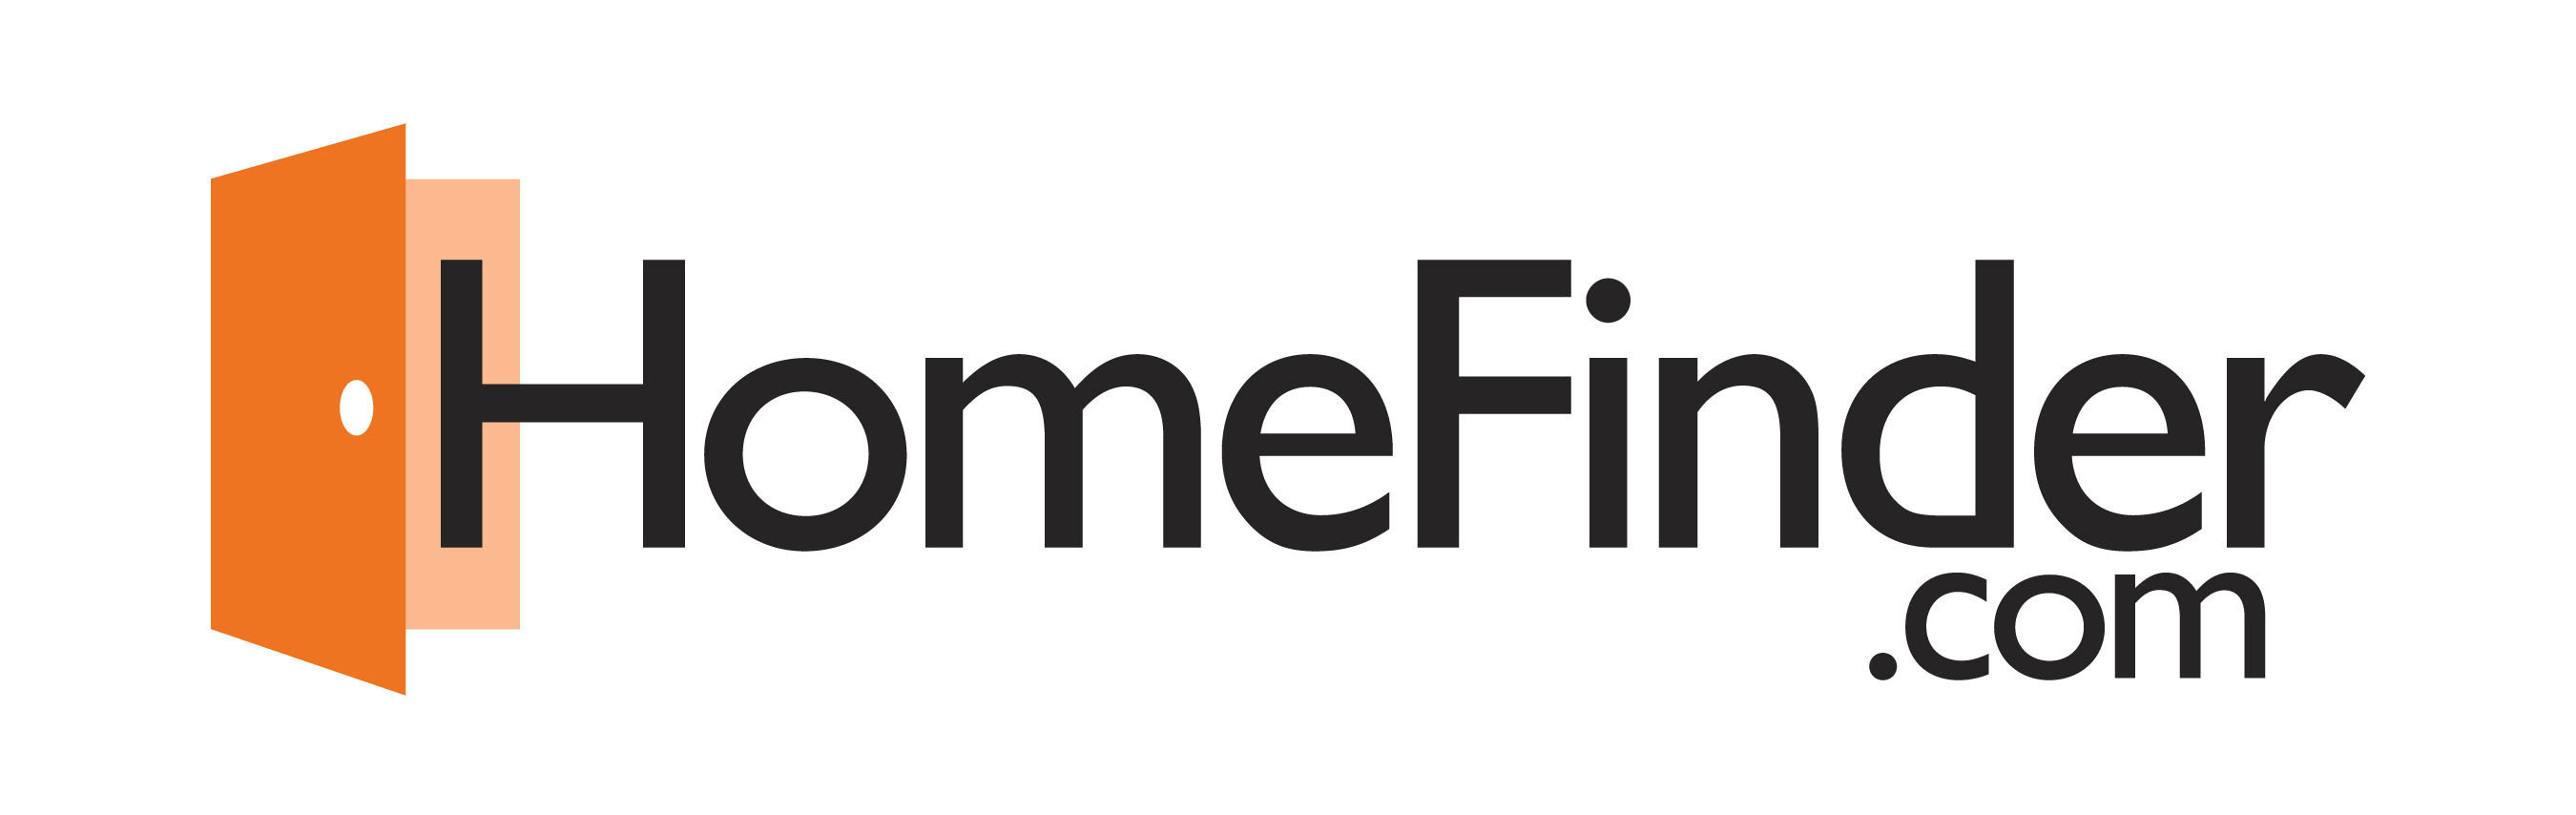 HomeFinder.com Logo.